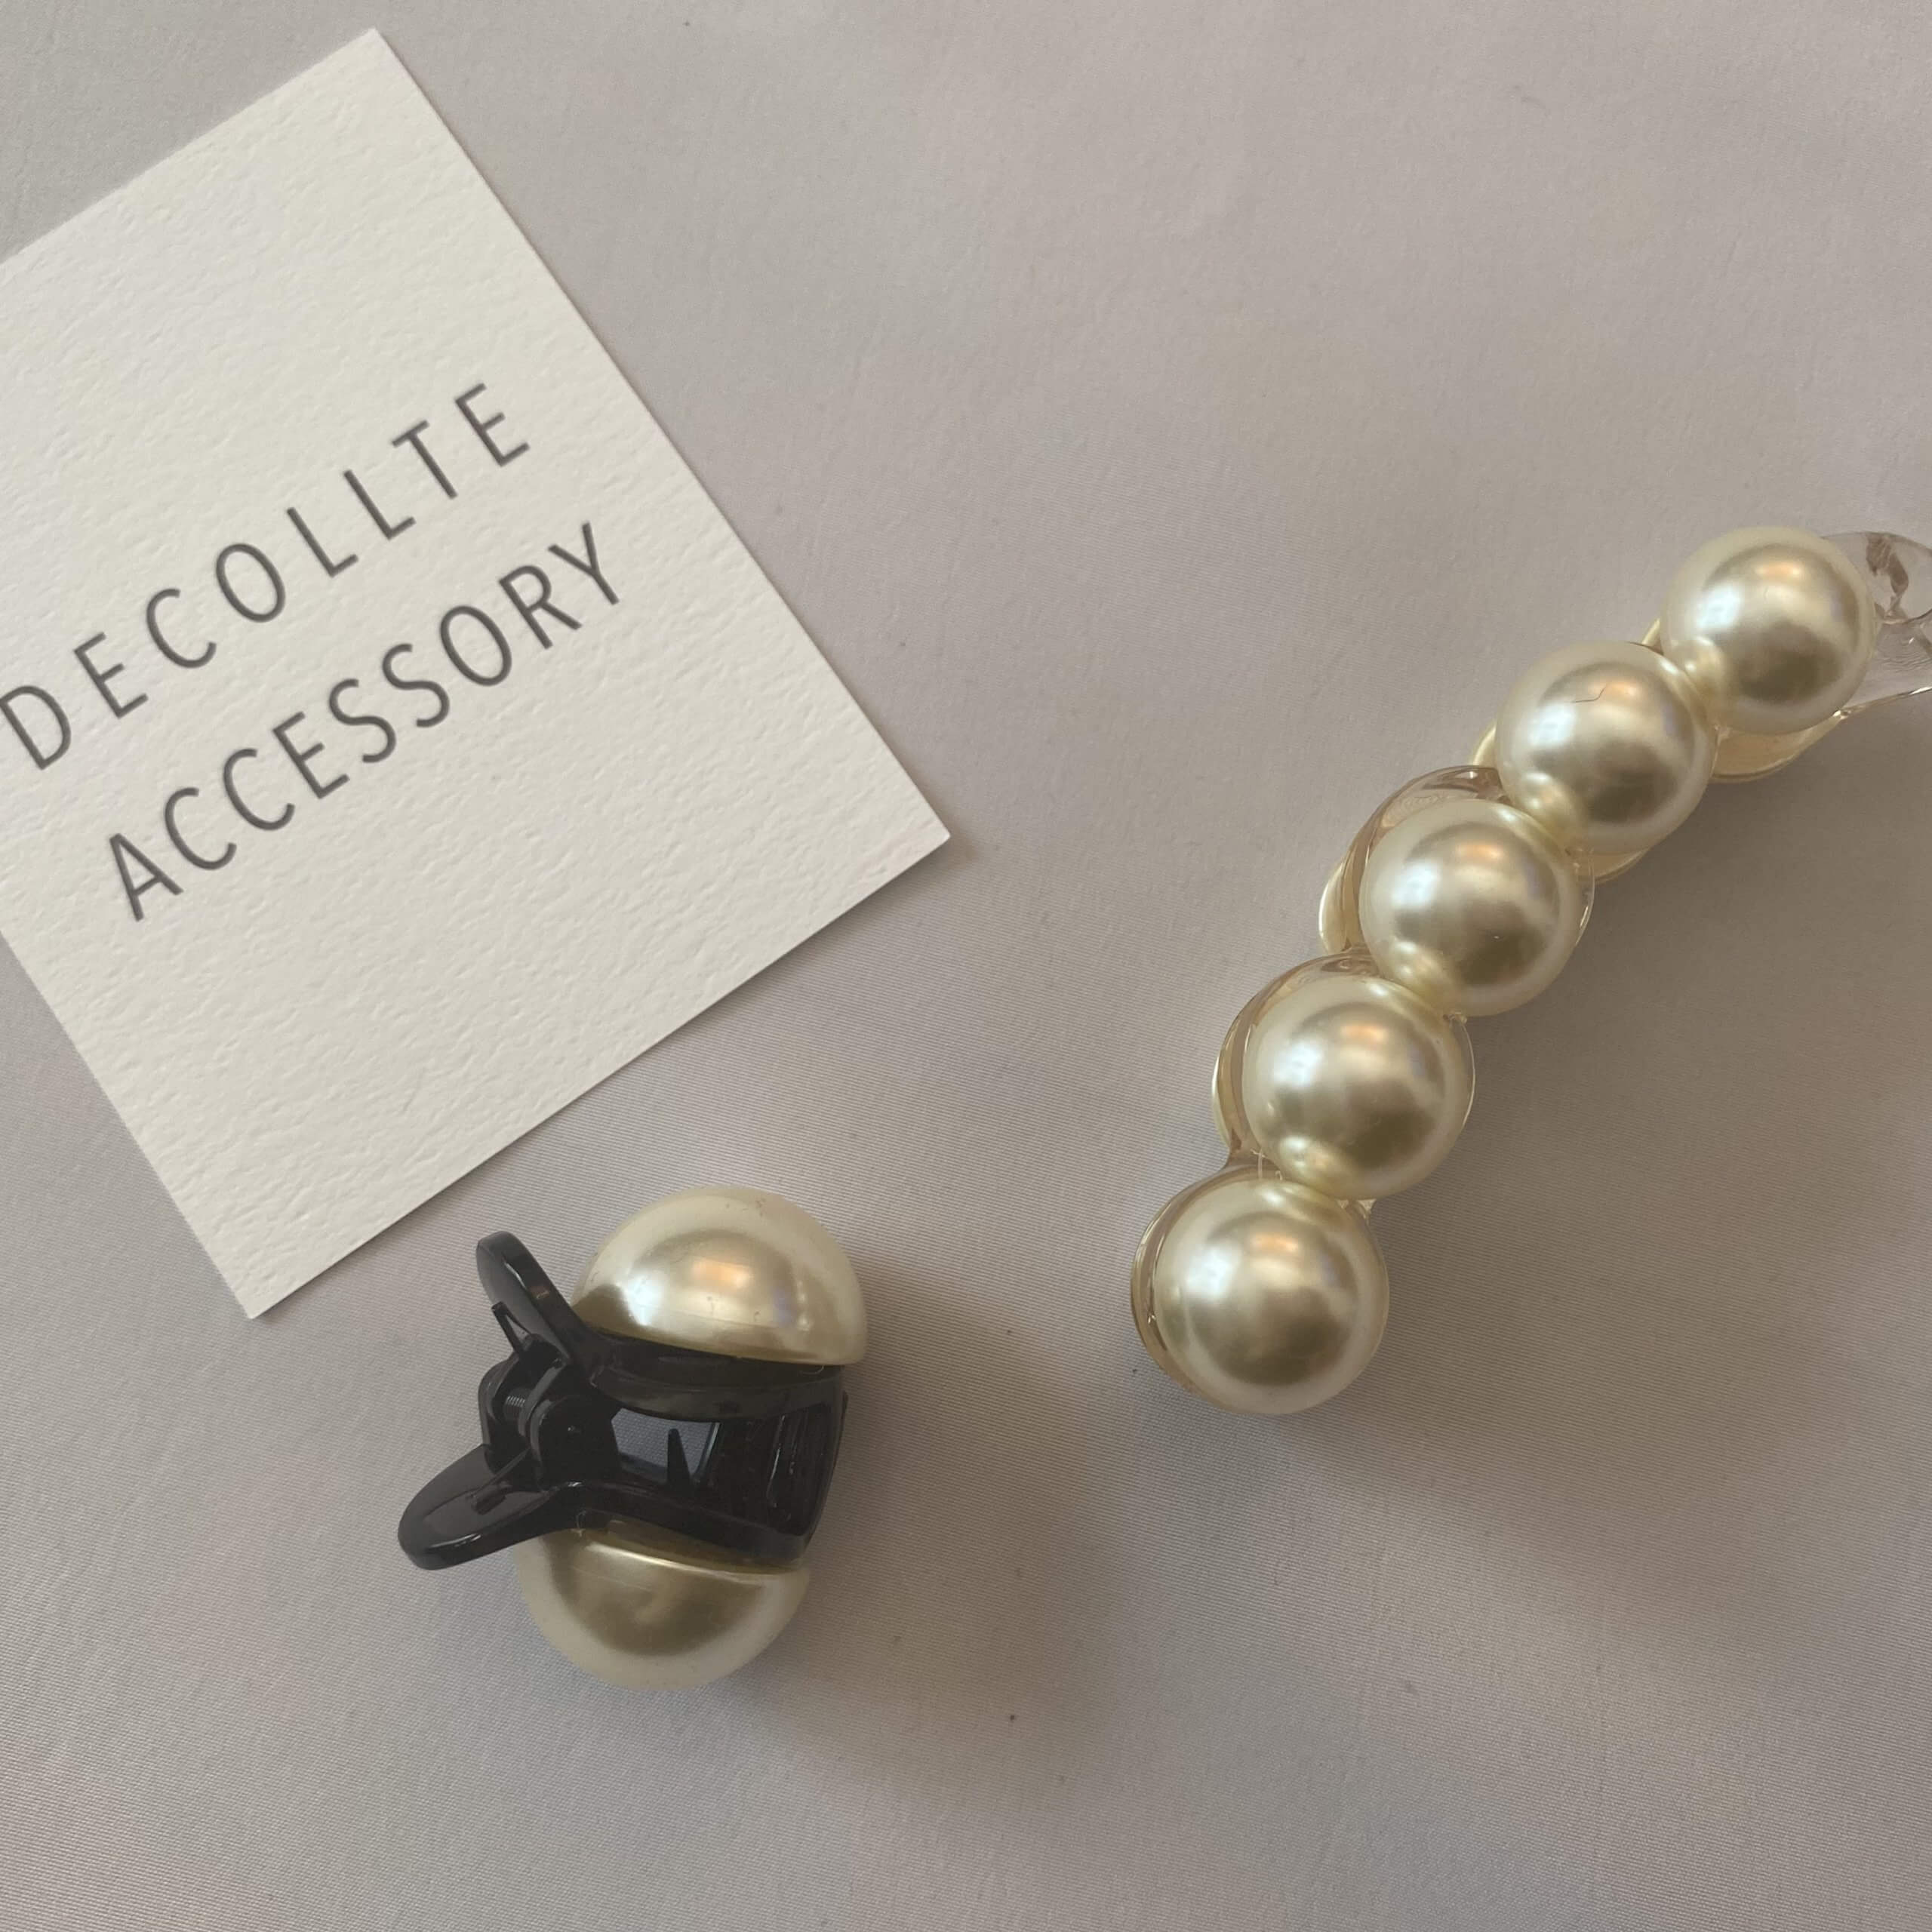 DECOLLTE accessoryのポップアップストアでヘアアクセサリーを購入しま